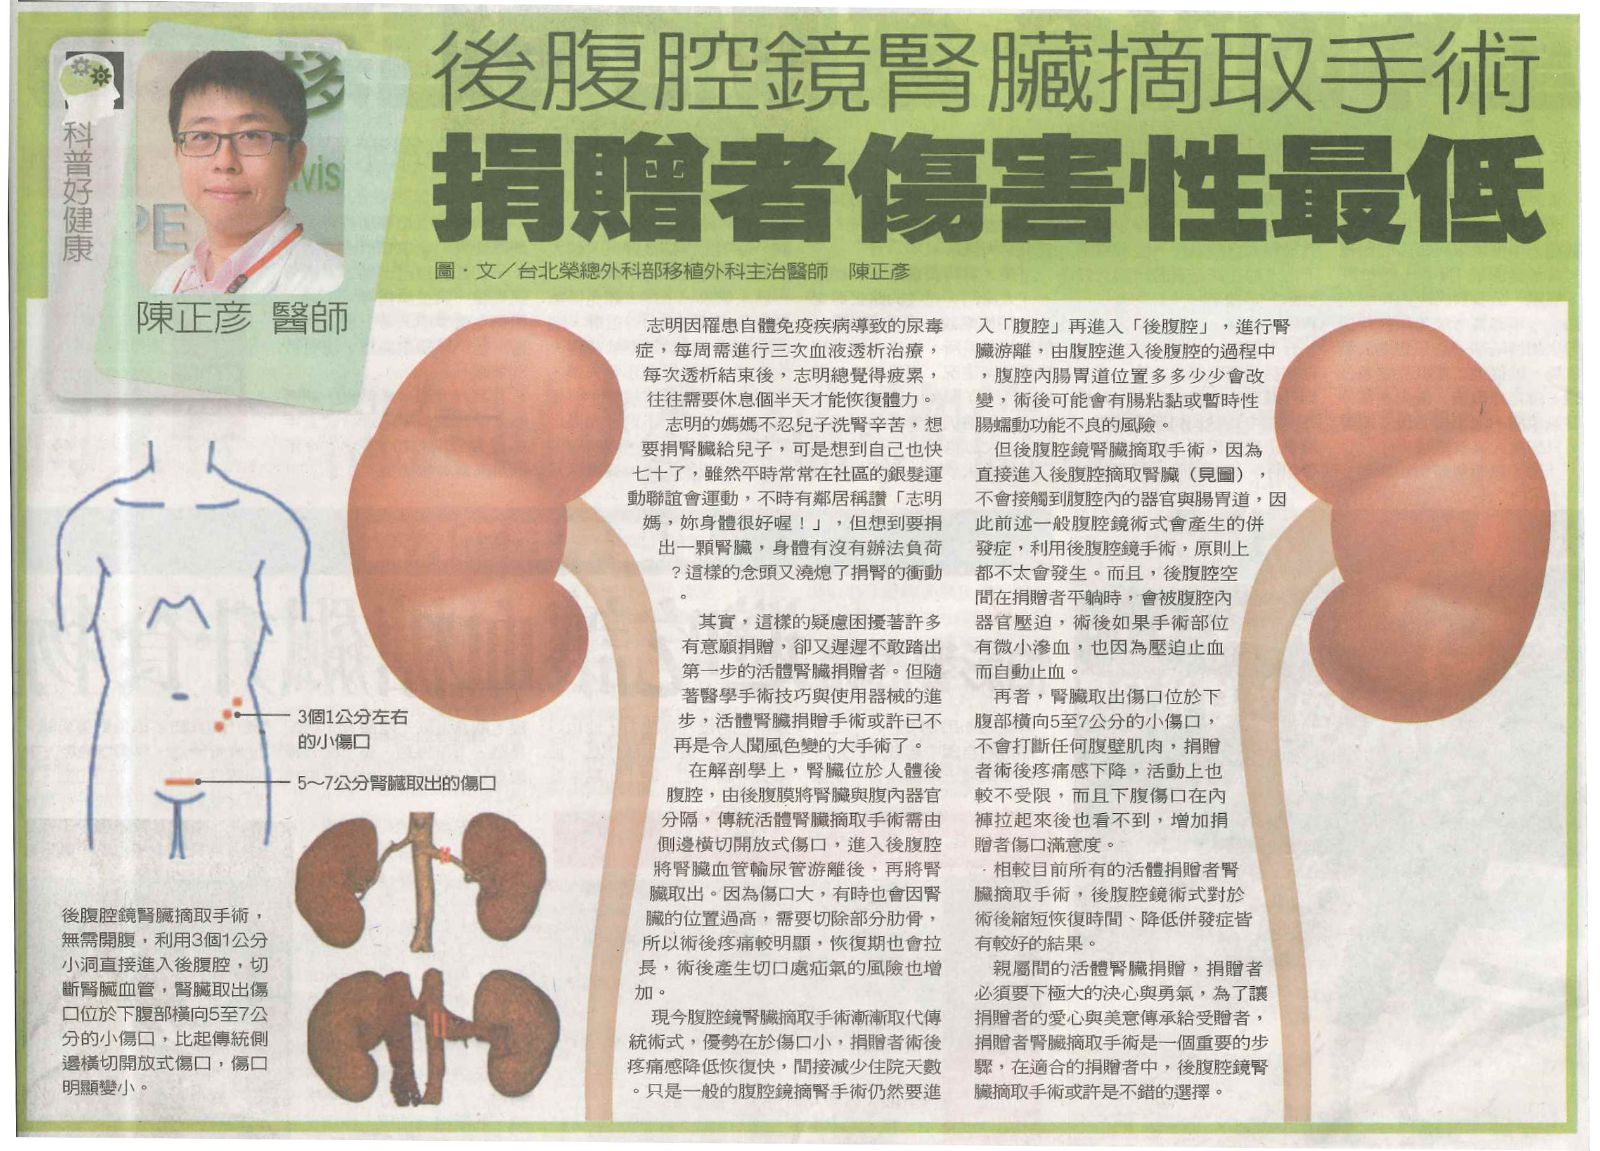 「後腹腔鏡腎驵摘取手術」報紙報導截圖